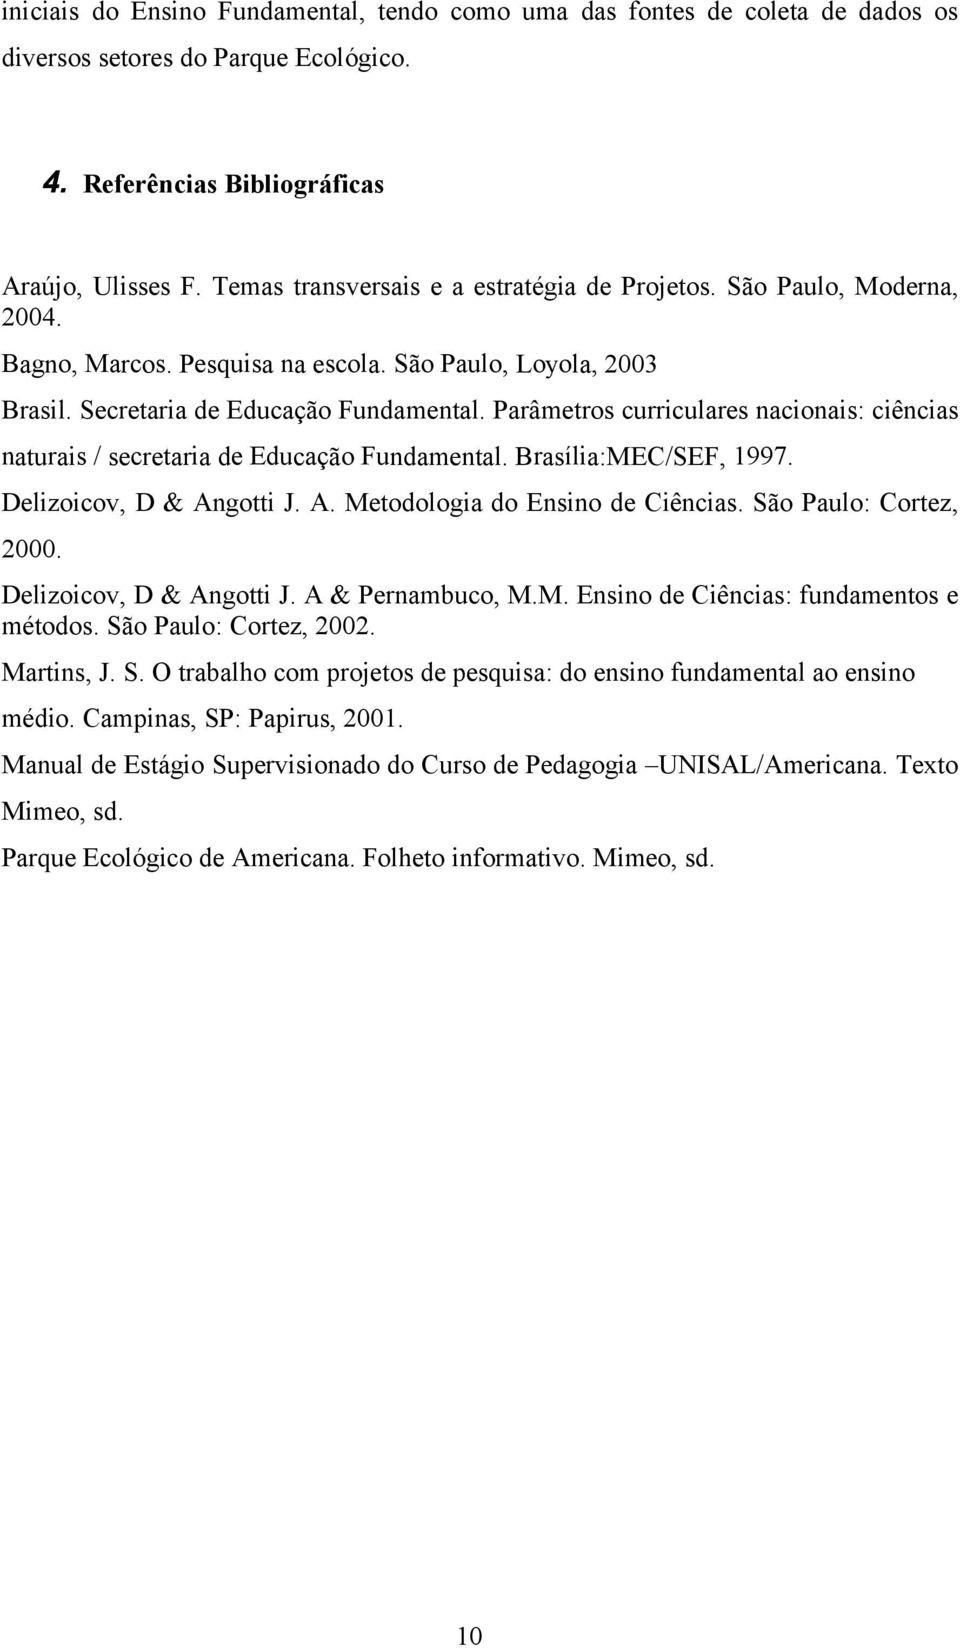 Parâmetros curriculares nacionais: ciências naturais / secretaria de Educação Fundamental. Brasília:MEC/SEF, 1997. Delizoicov, D & Angotti J. A. Metodologia do Ensino de Ciências.